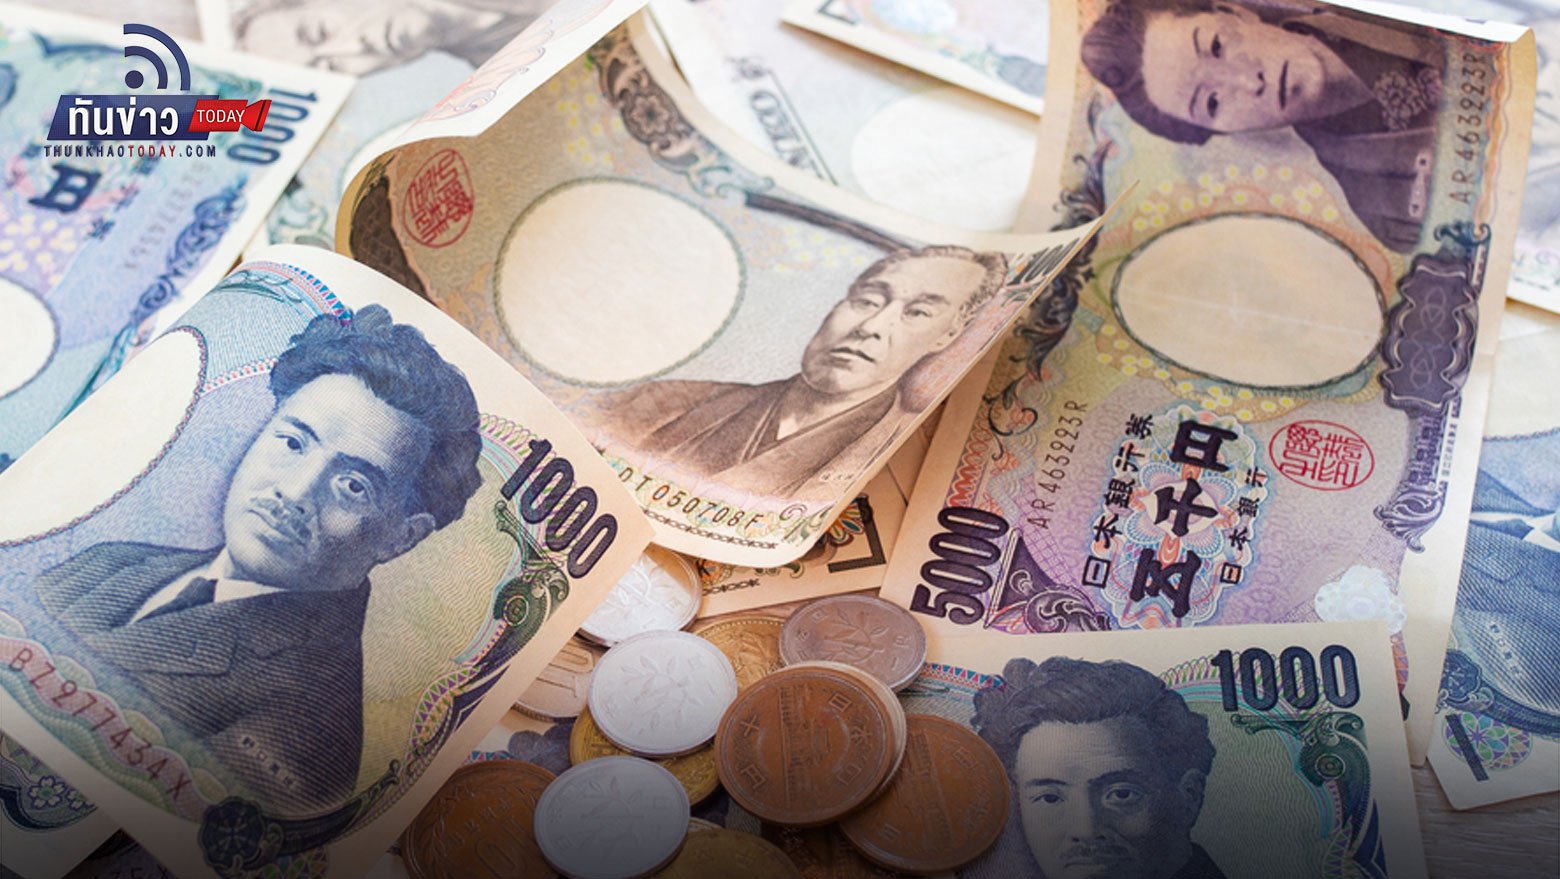 เงินบาทอ่อนในรอบ 5 ปี เงินเยนญี่ปุ่นอ่อนค่าในรอบ 20 ปี เพราะอะไร? | ทันข่าว  Today